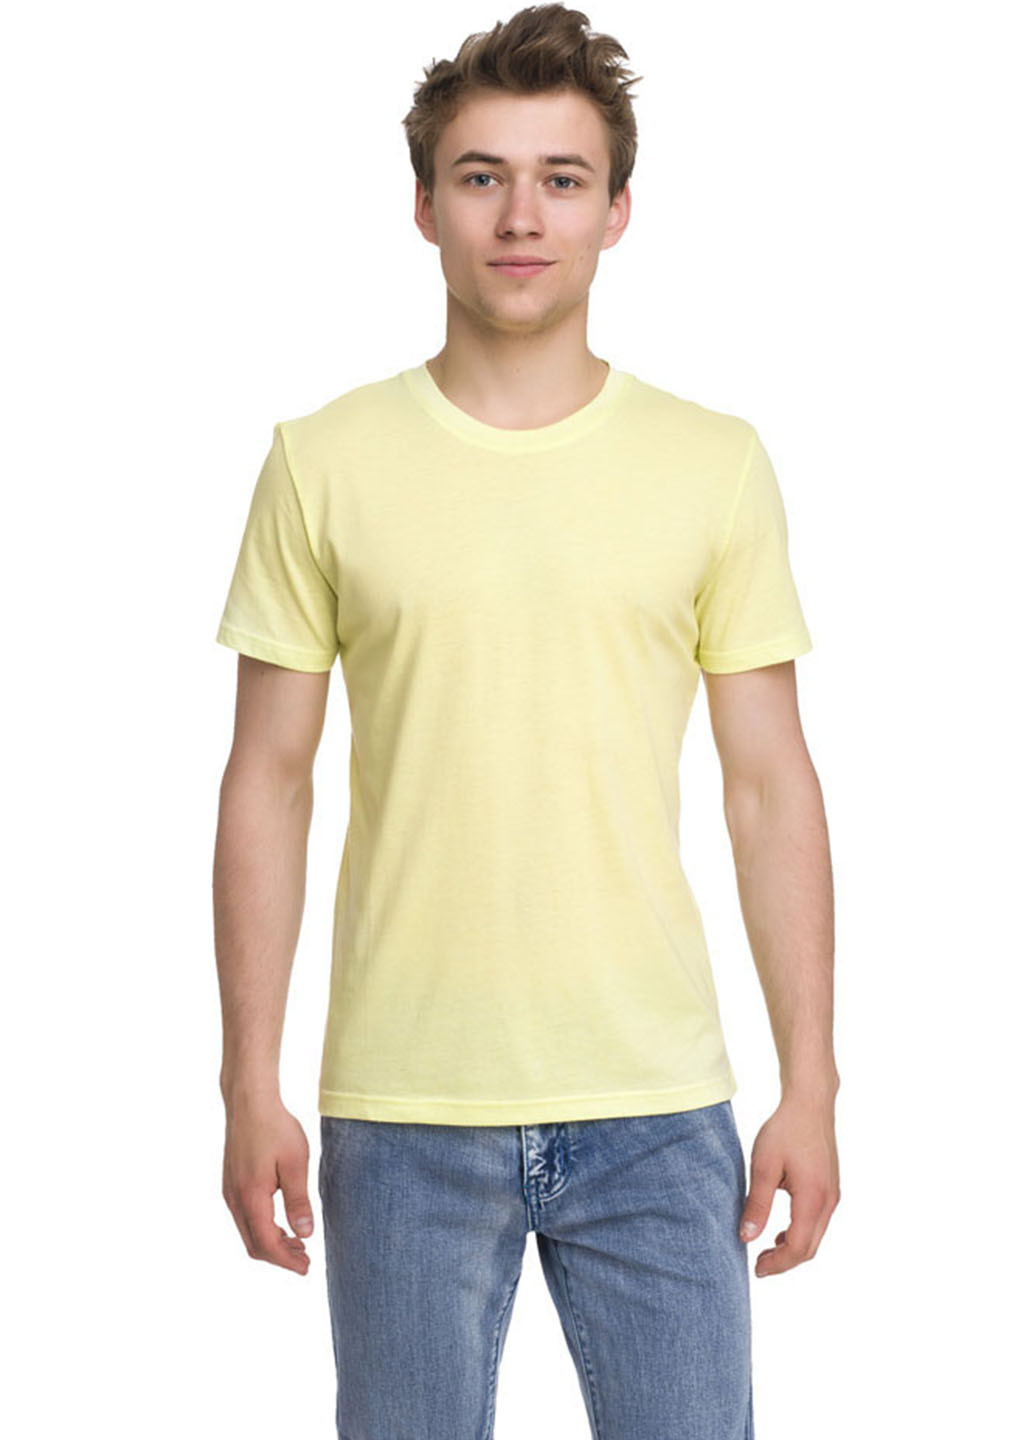 Светло-желтая футболка Promin